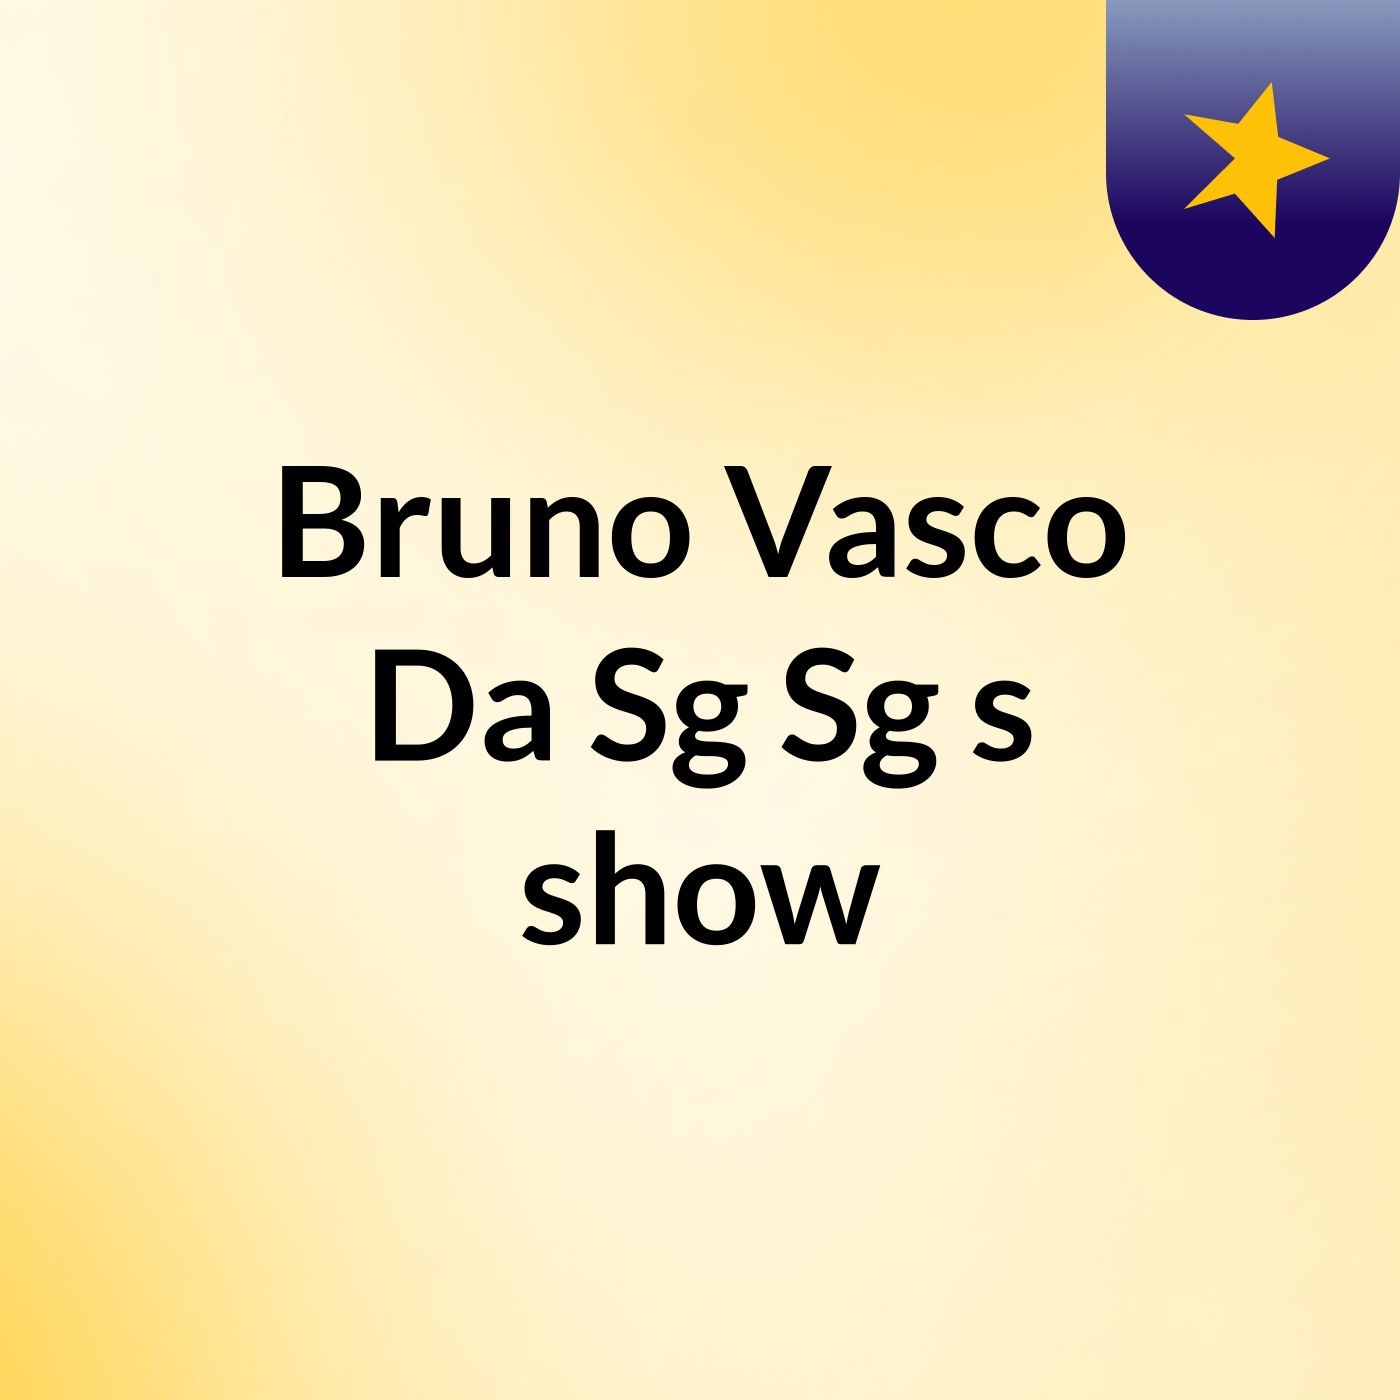 Bruno Vasco Da Sg Sg's show